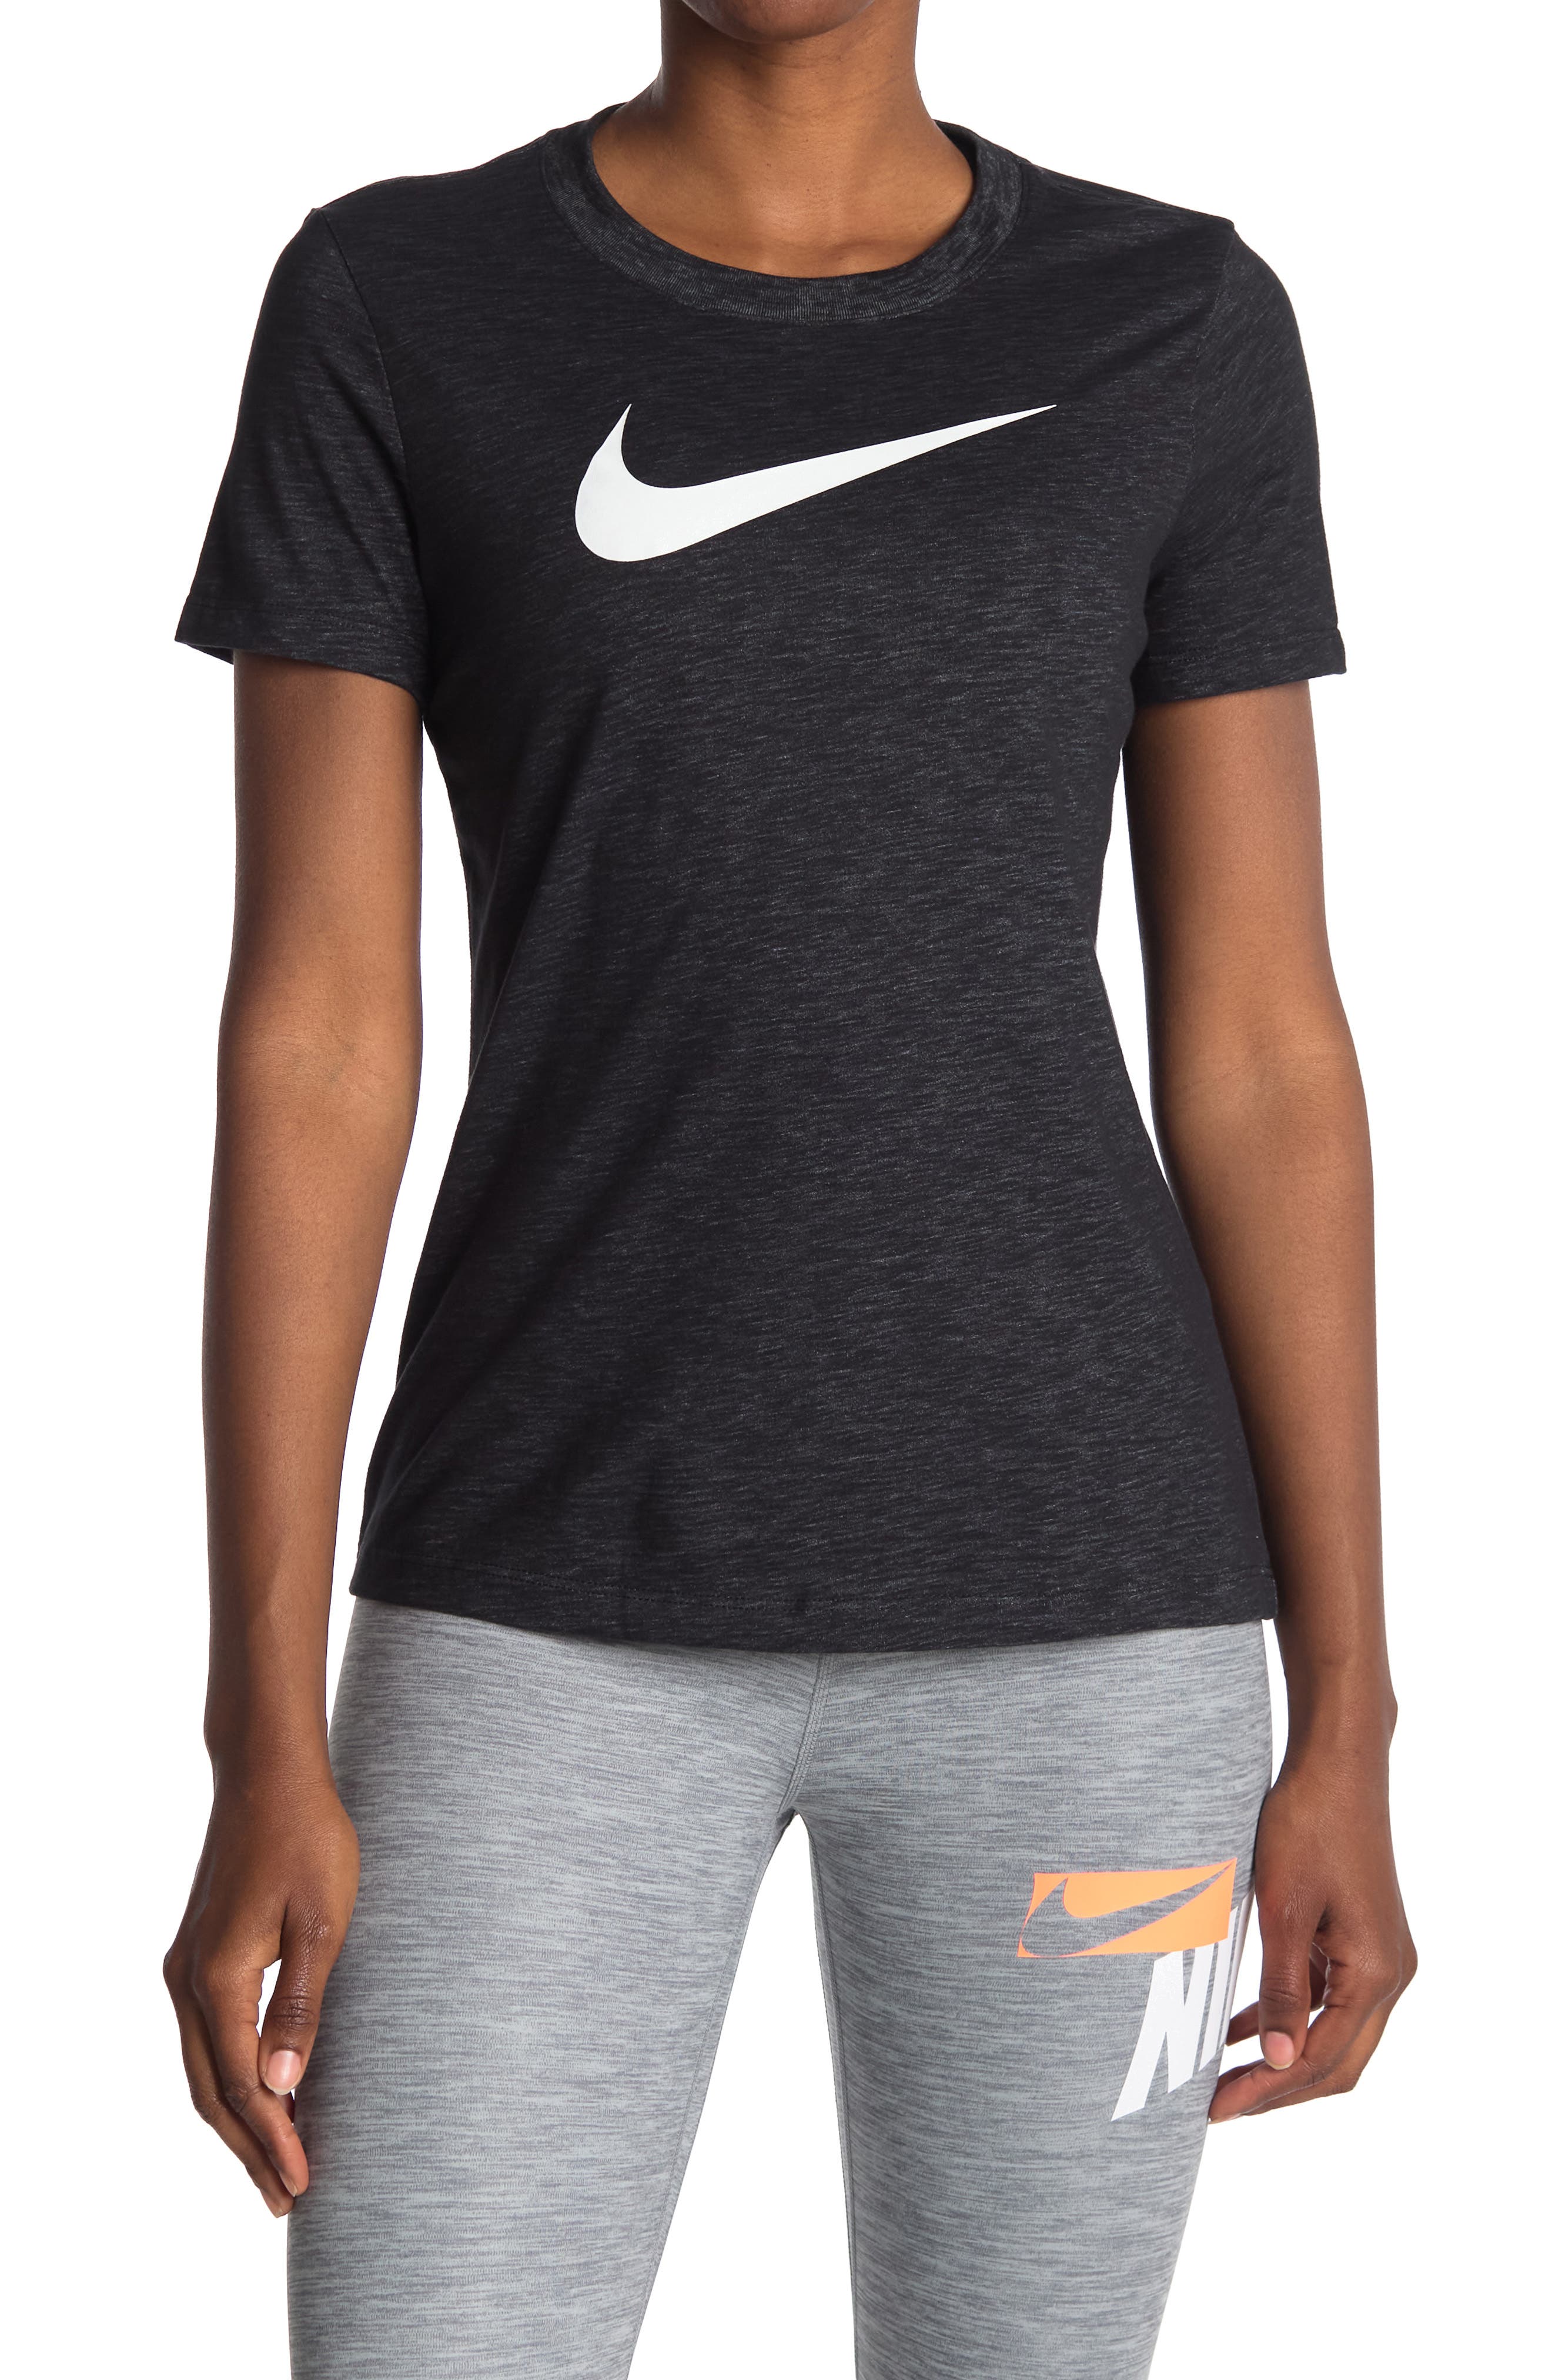 Nike Dri-fit Training T-shirt In Black/htr/white